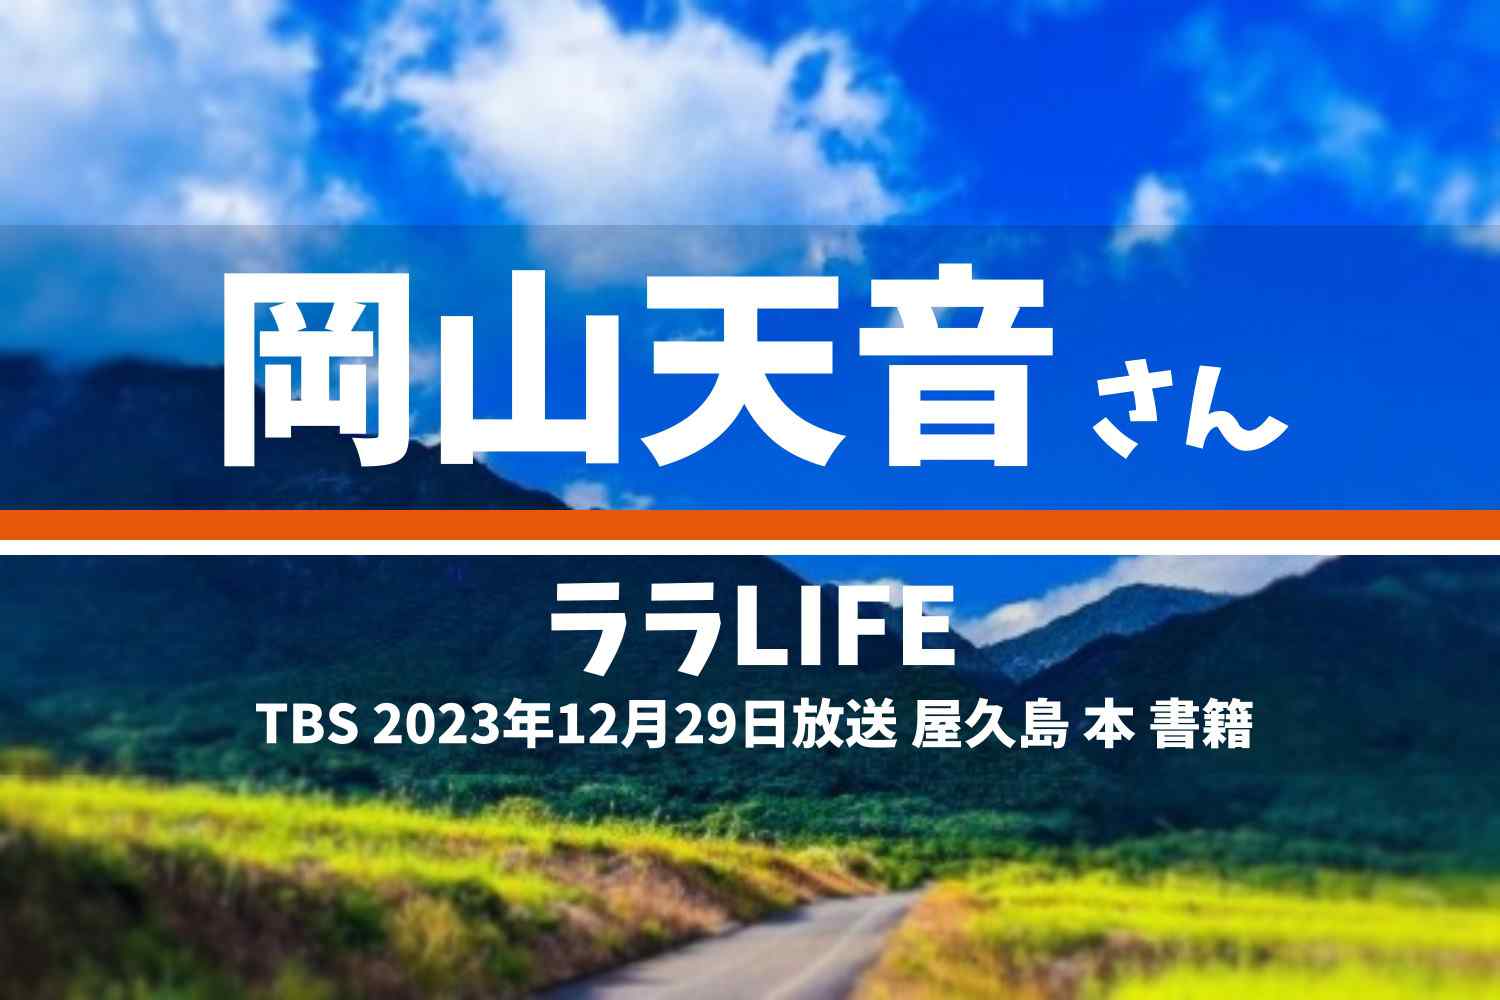 ララLIFE 岡山天音さん テレビ番組 2023年12月29日放送